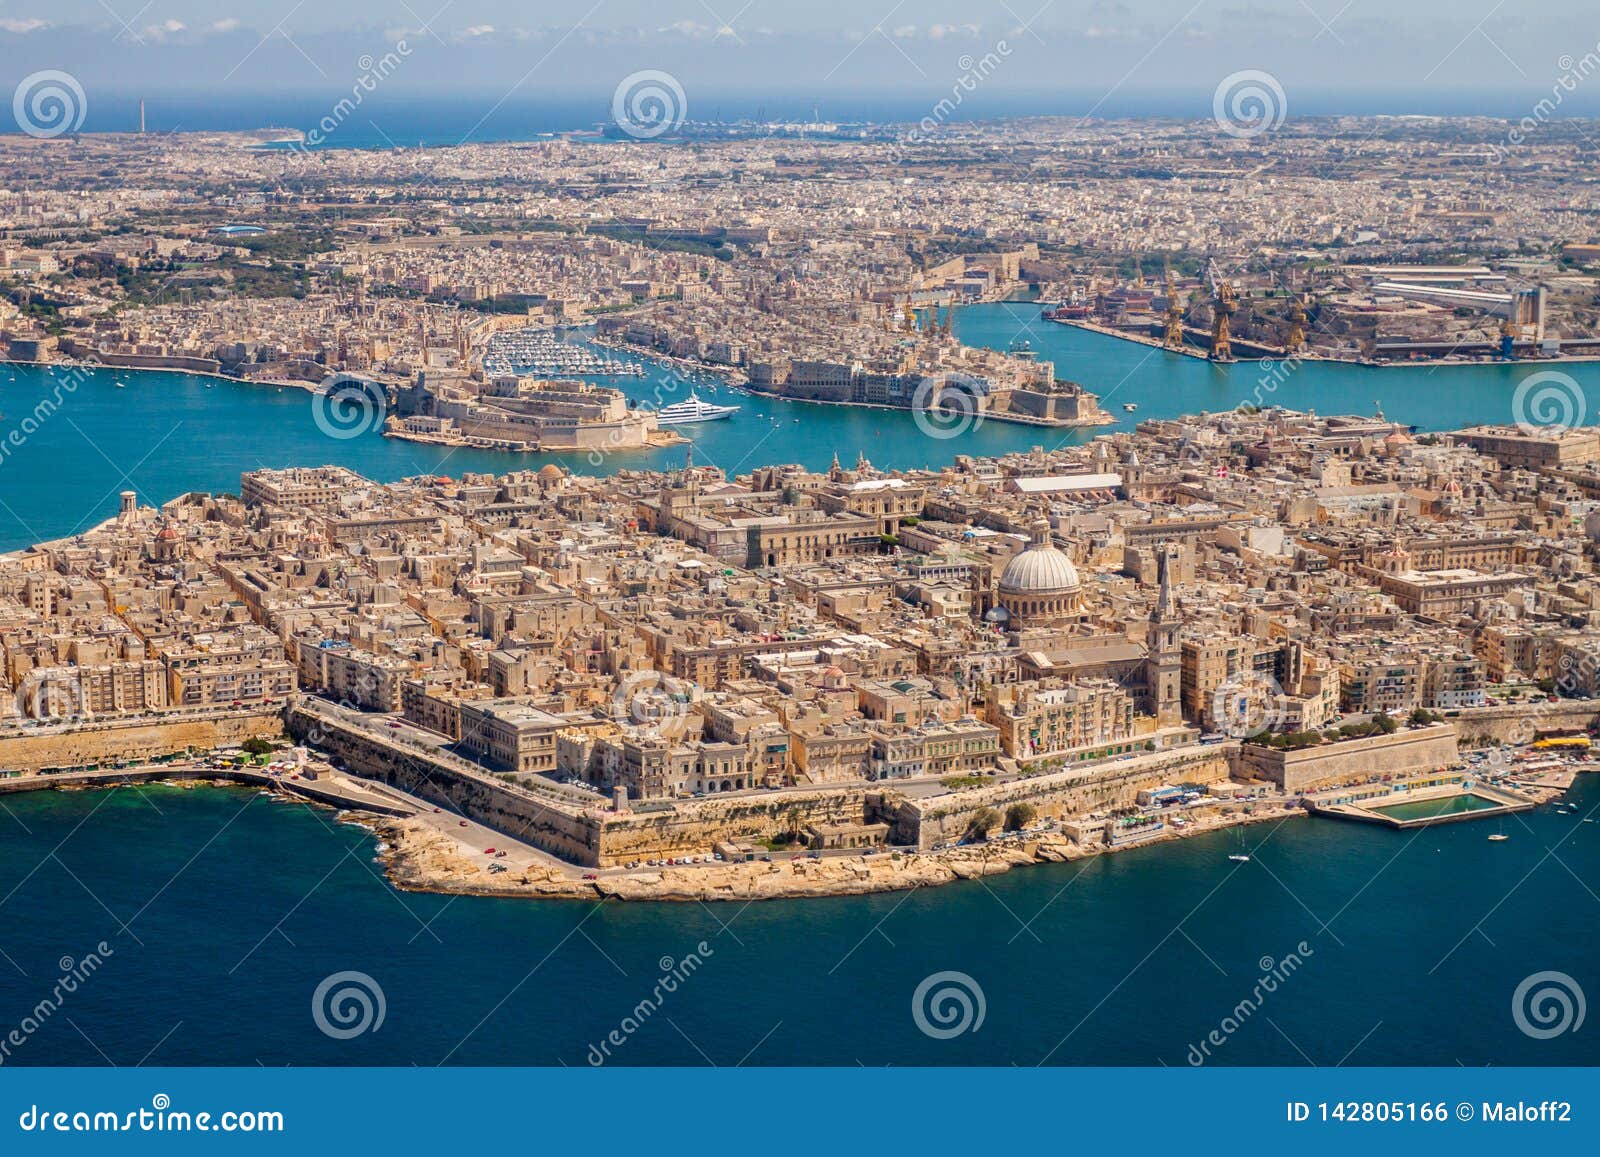 malta aerial view. valetta, capital city of malta, grand harbour, senglea and il-birgu or vittoriosa towns, fort ricasoli.